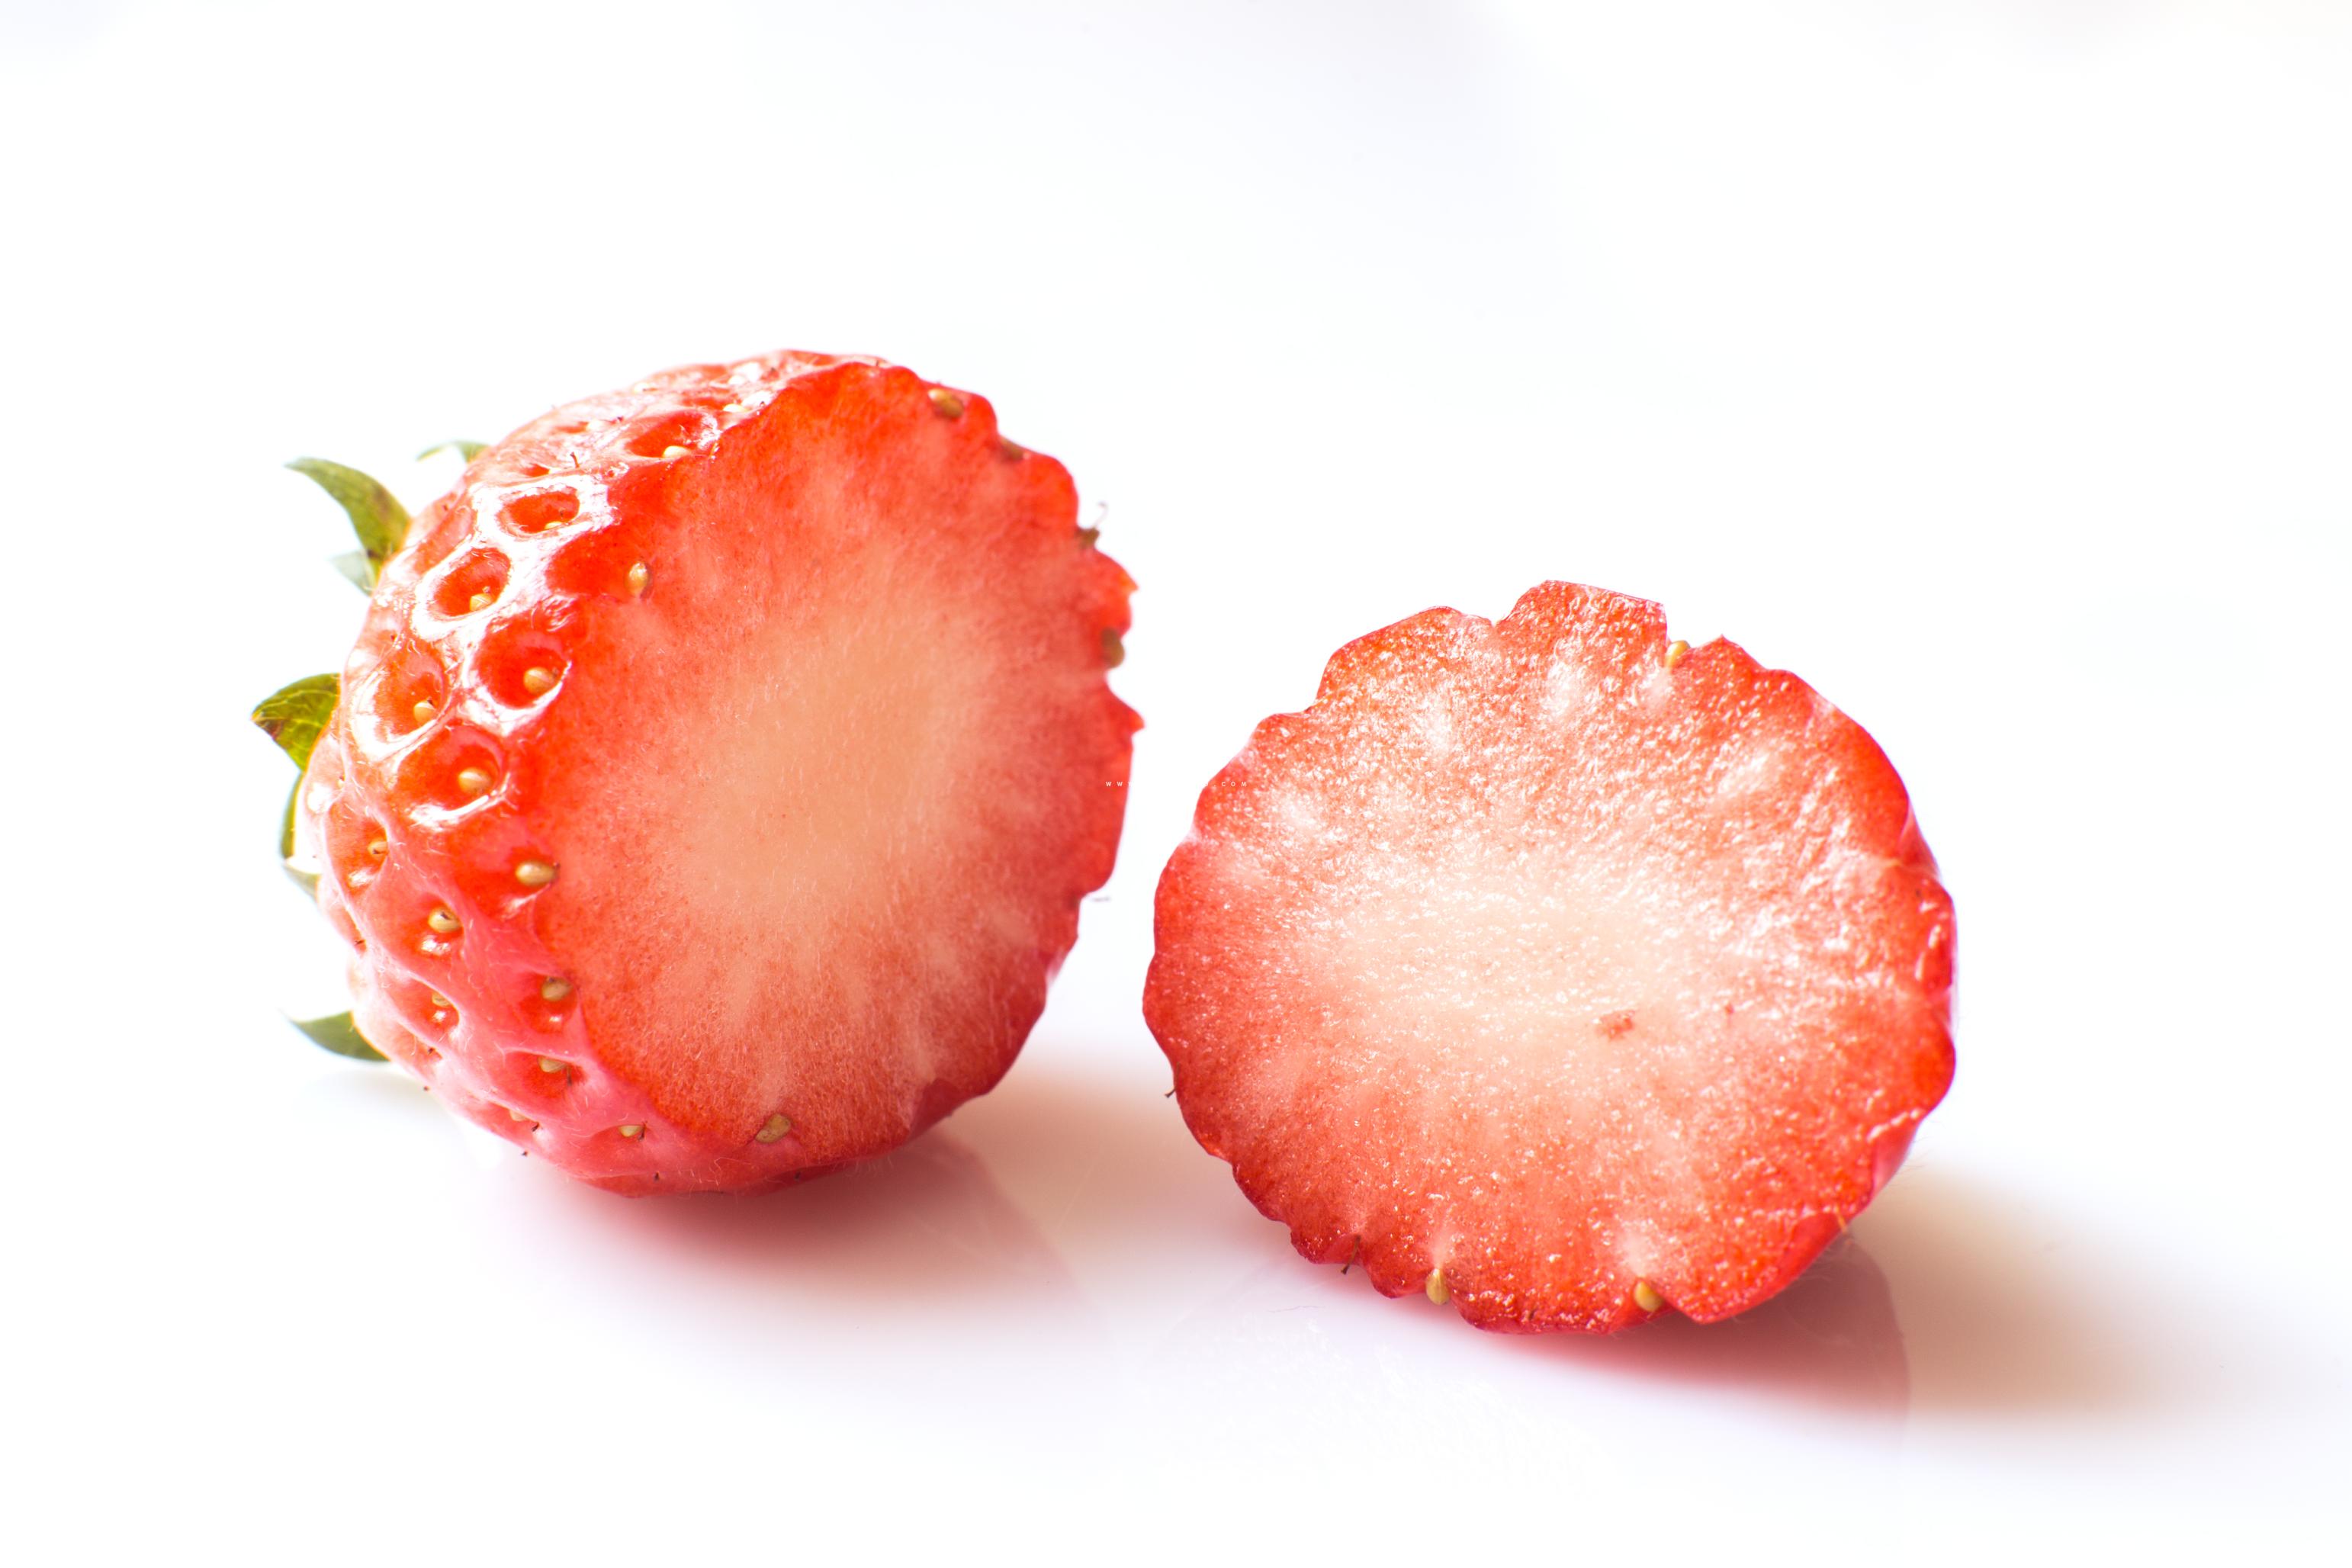 [THUMBNAIL] 쪼개진 딸기